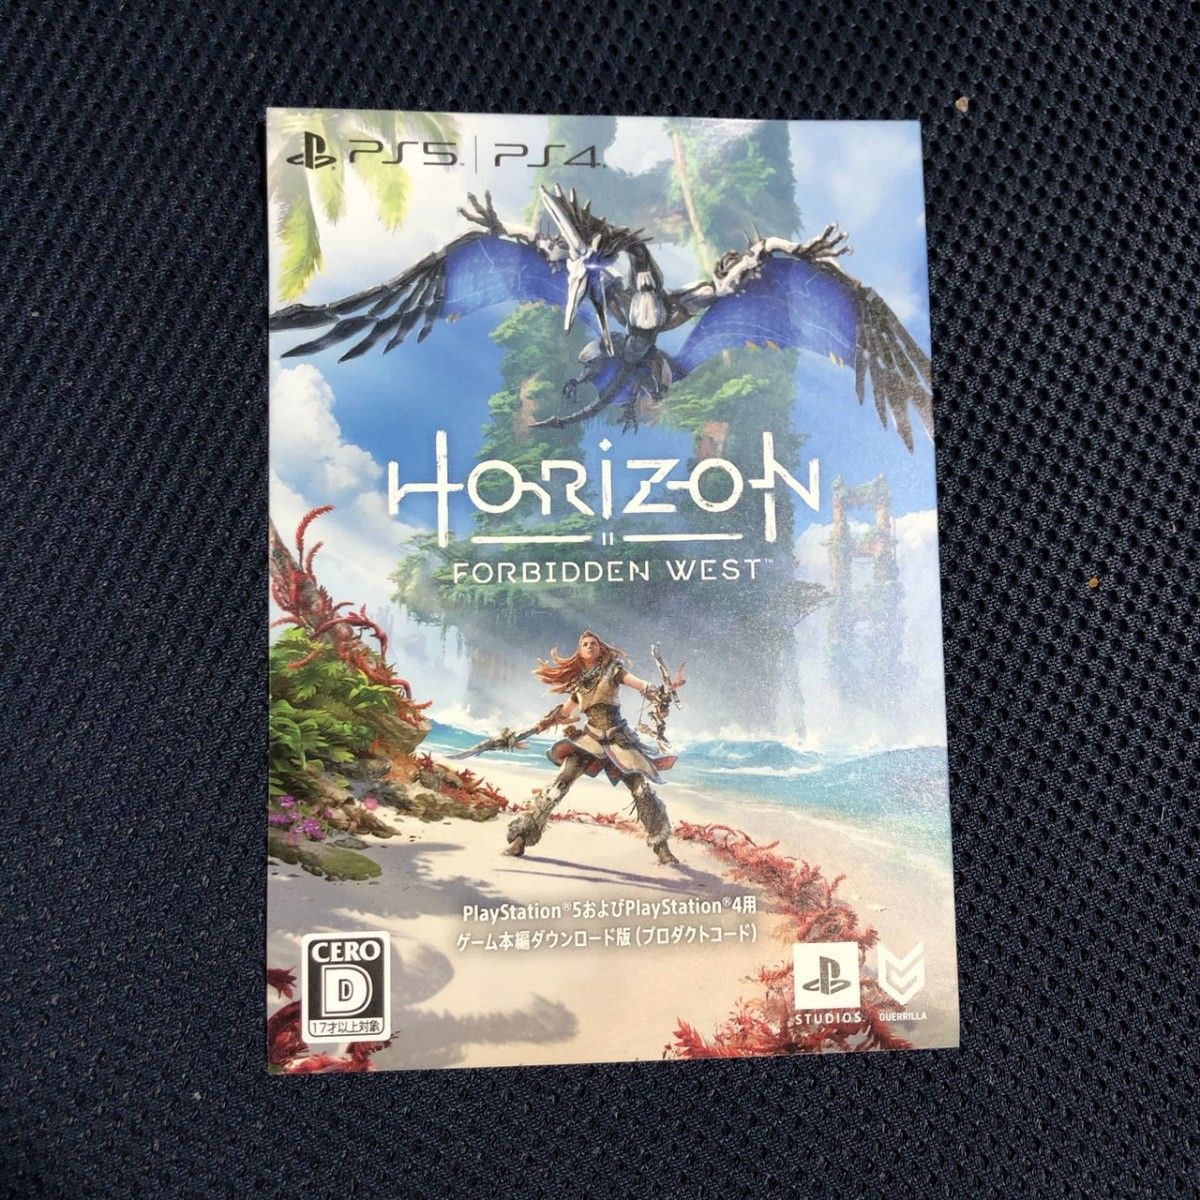 PS5 PS4 ホライゾン プロダクトコード Horizon FORBIDDEN WEST ダウンロード版